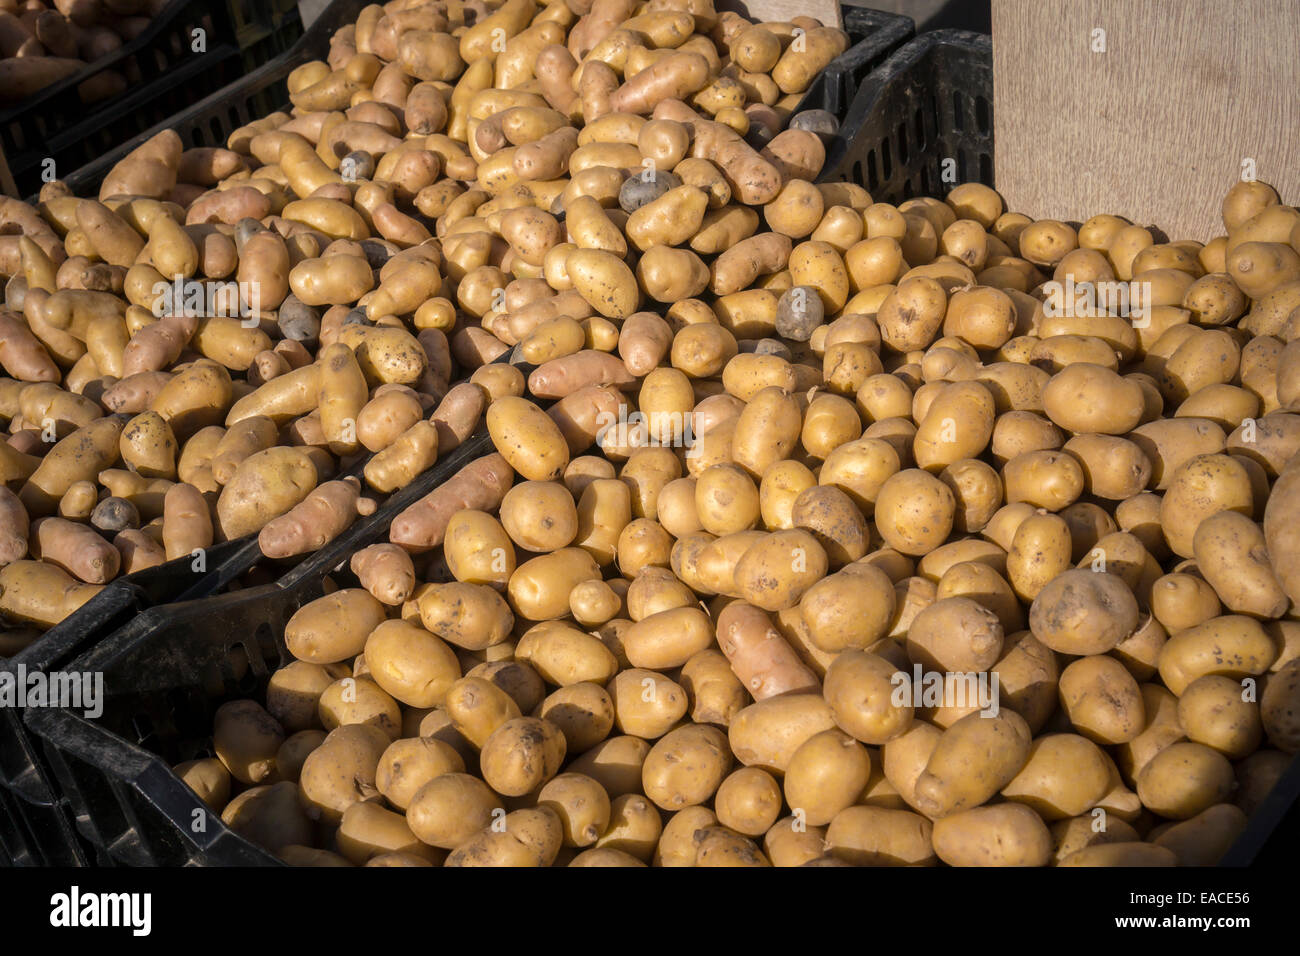 Local non-GMO potatoes at the Union Square Greenmarket in New York Stock Photo